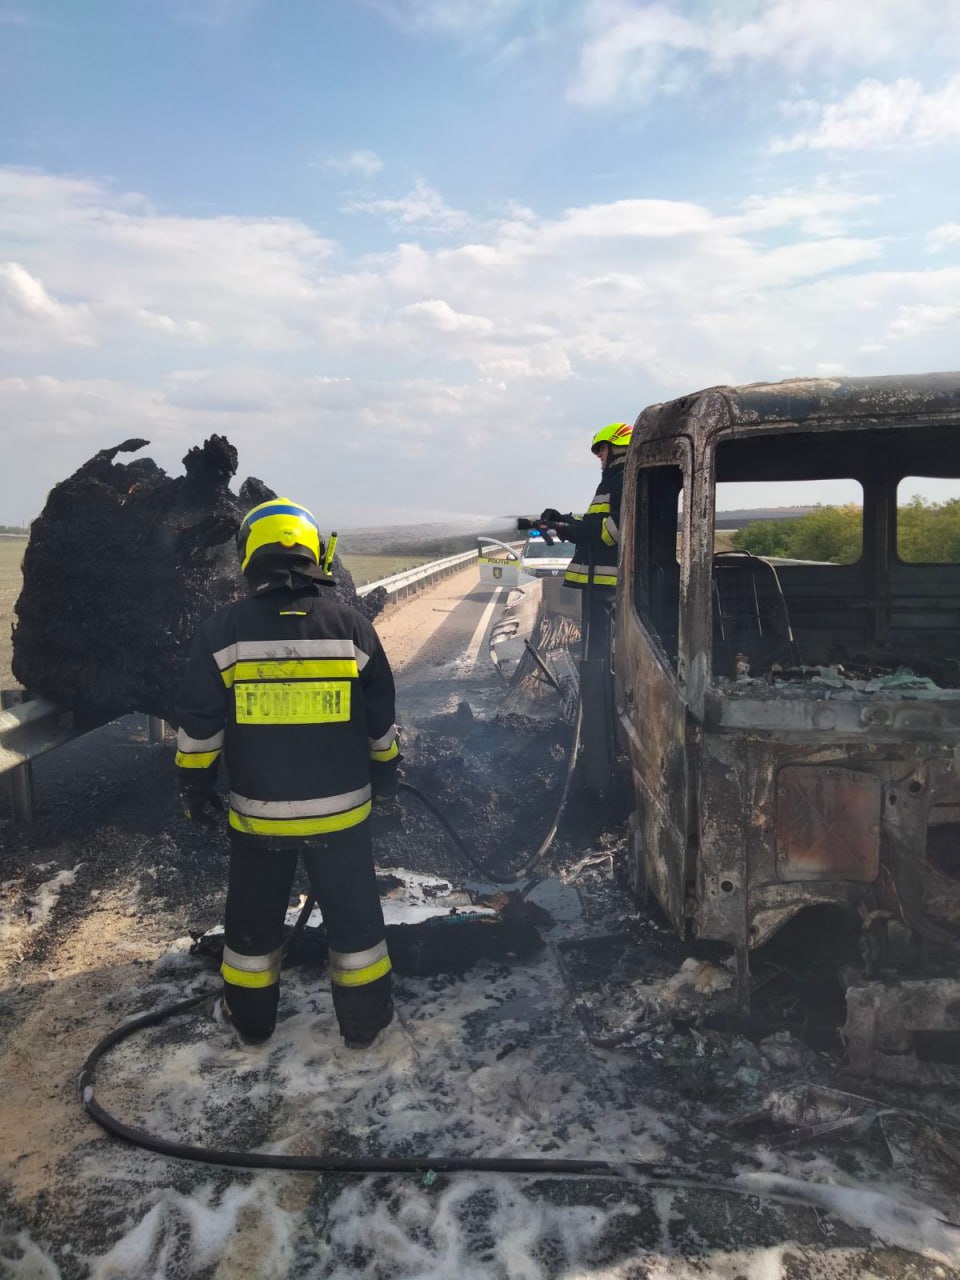 (ФОТО) На трассе в Комрате загорелся грузовик. На место прибыли два пожарных расчета